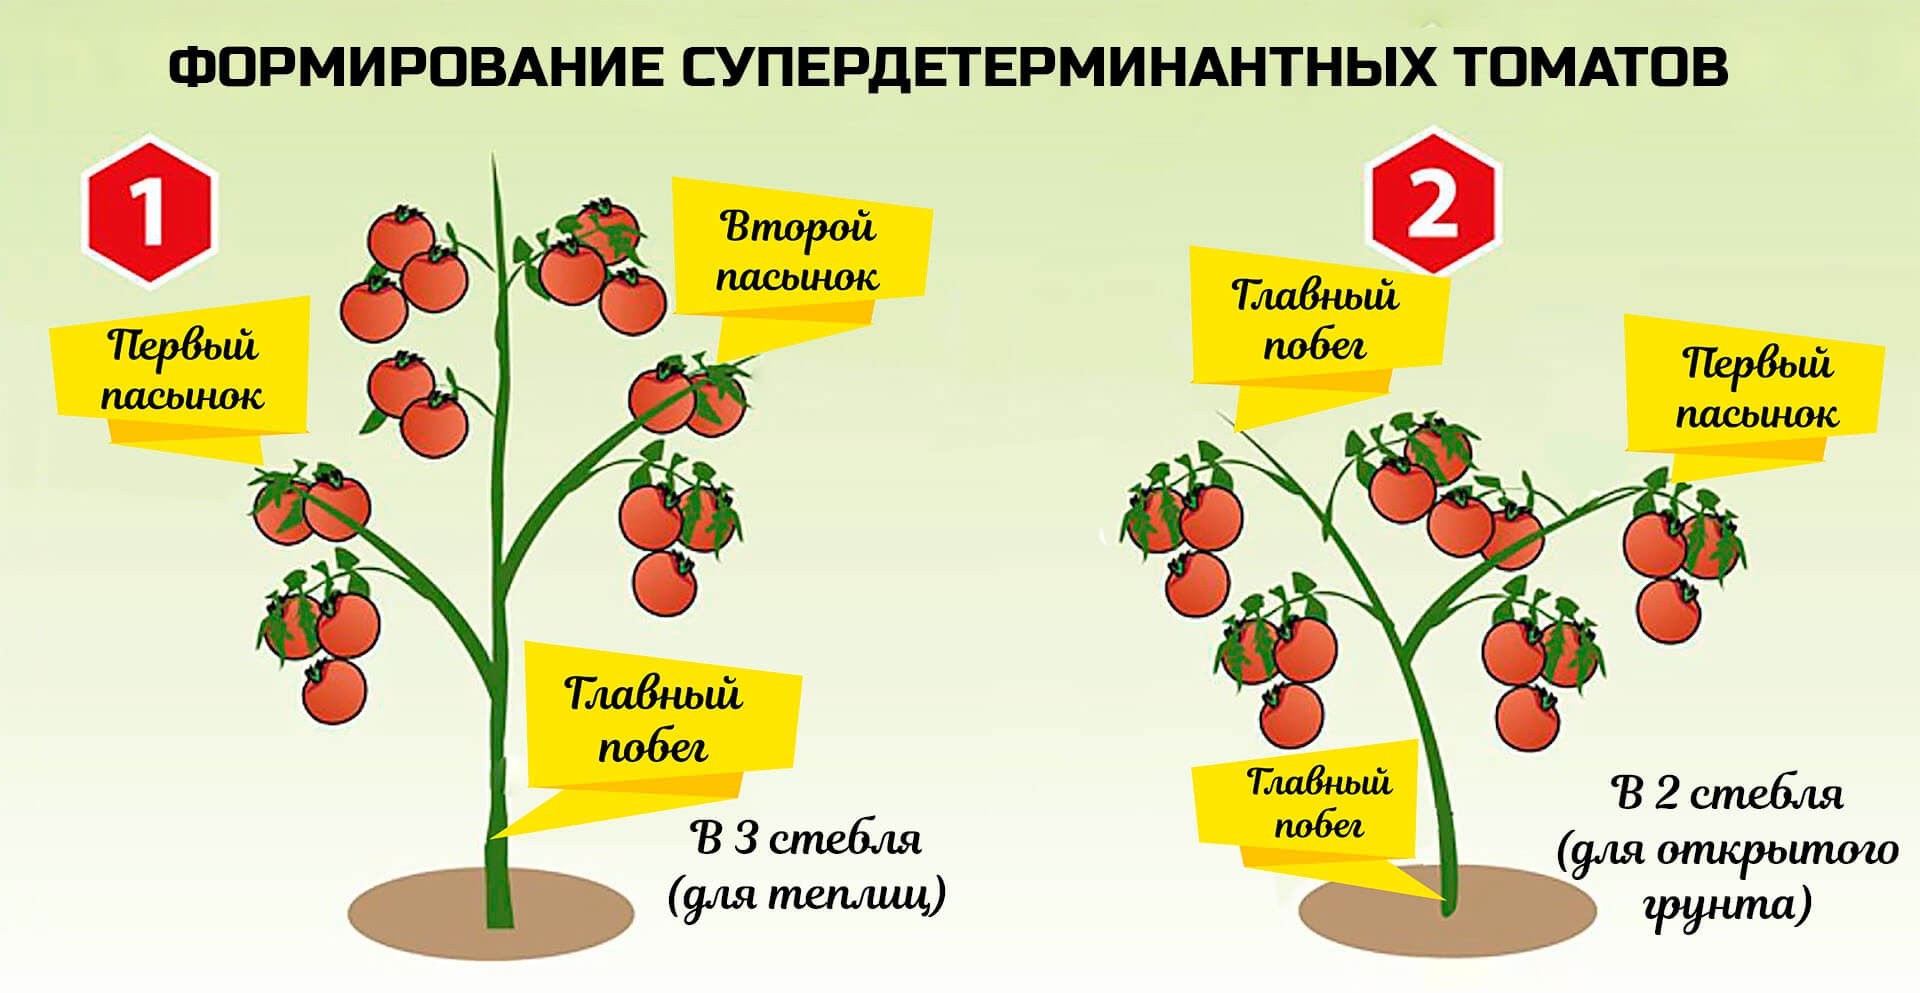 Посадка помидор в теплицу: подготовка почвы, возраст рассады, сроки, особенности + фото